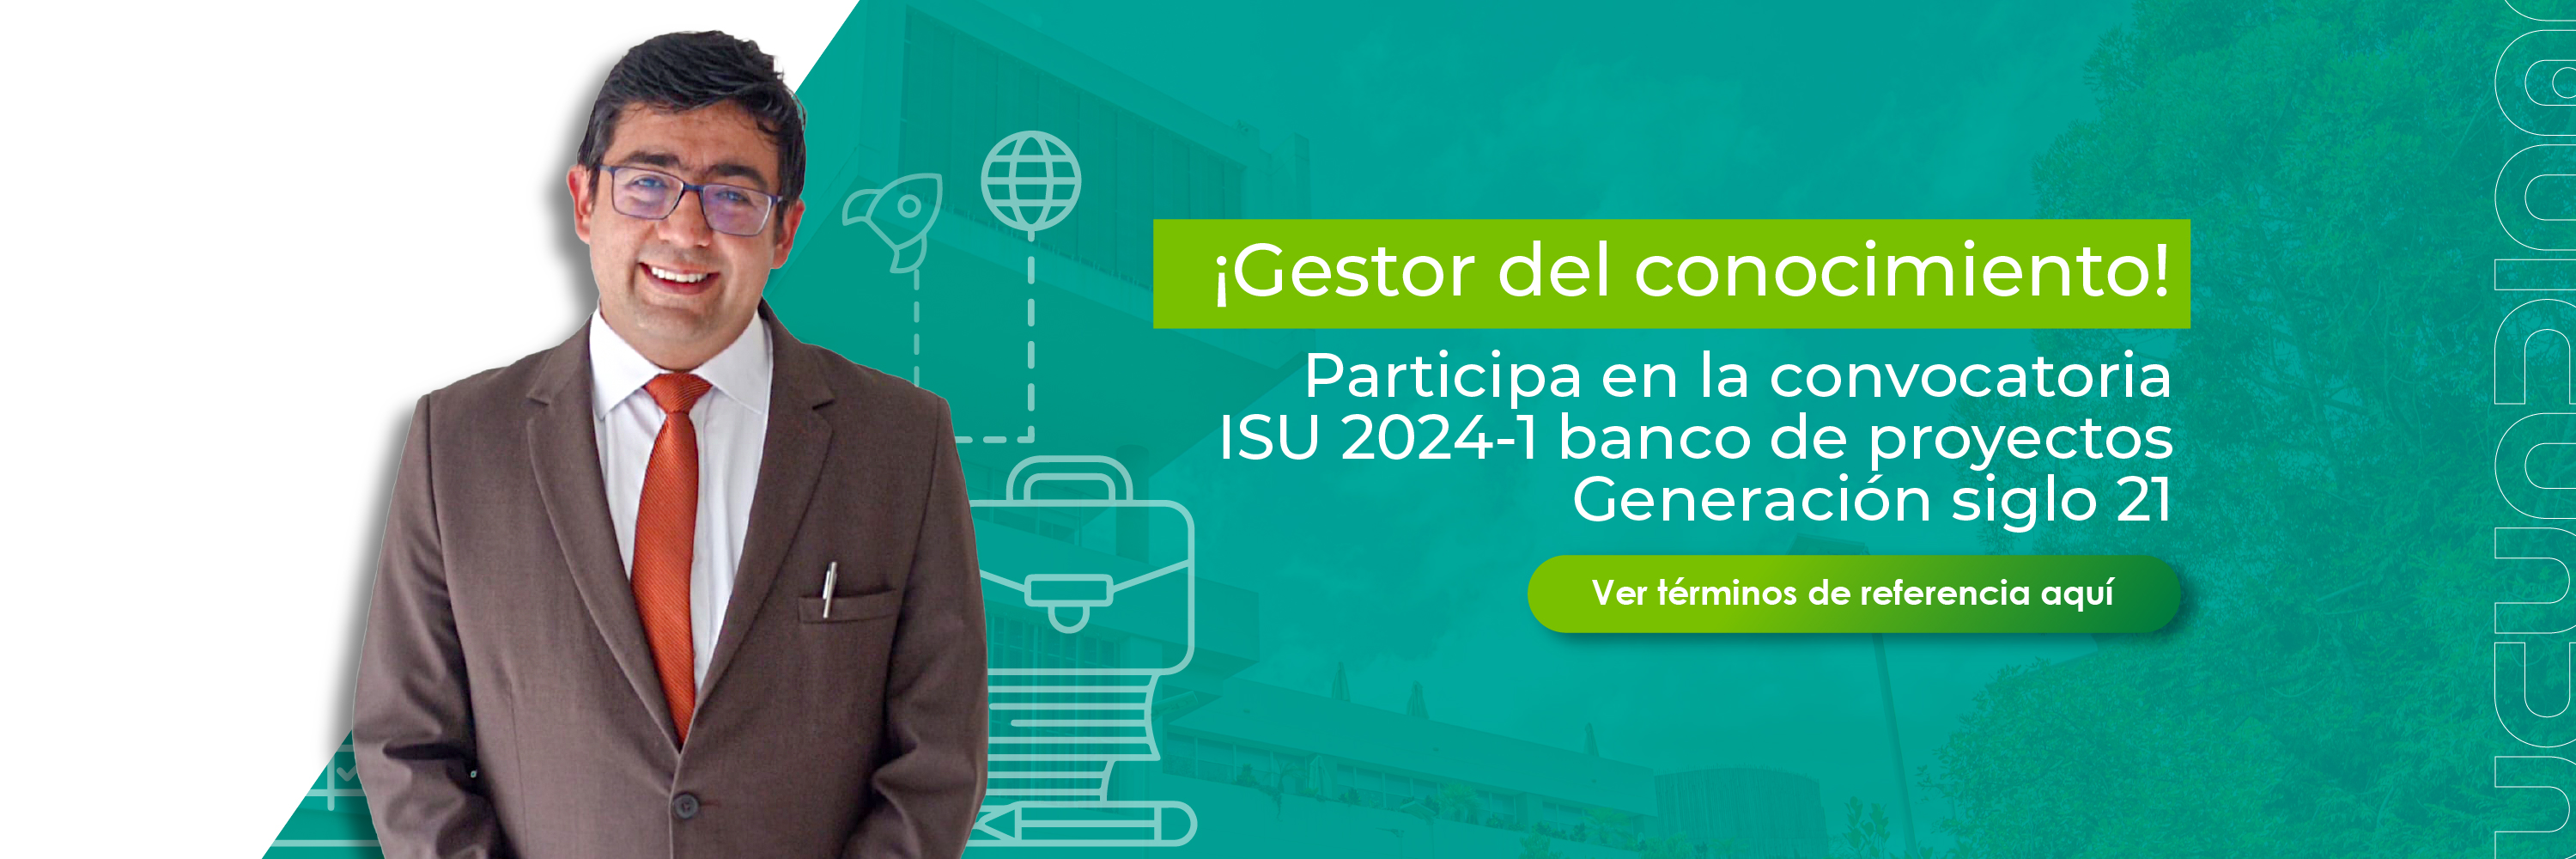 Convocatoria ISU 2024-1 Banco de proyectos generacion siglo 21